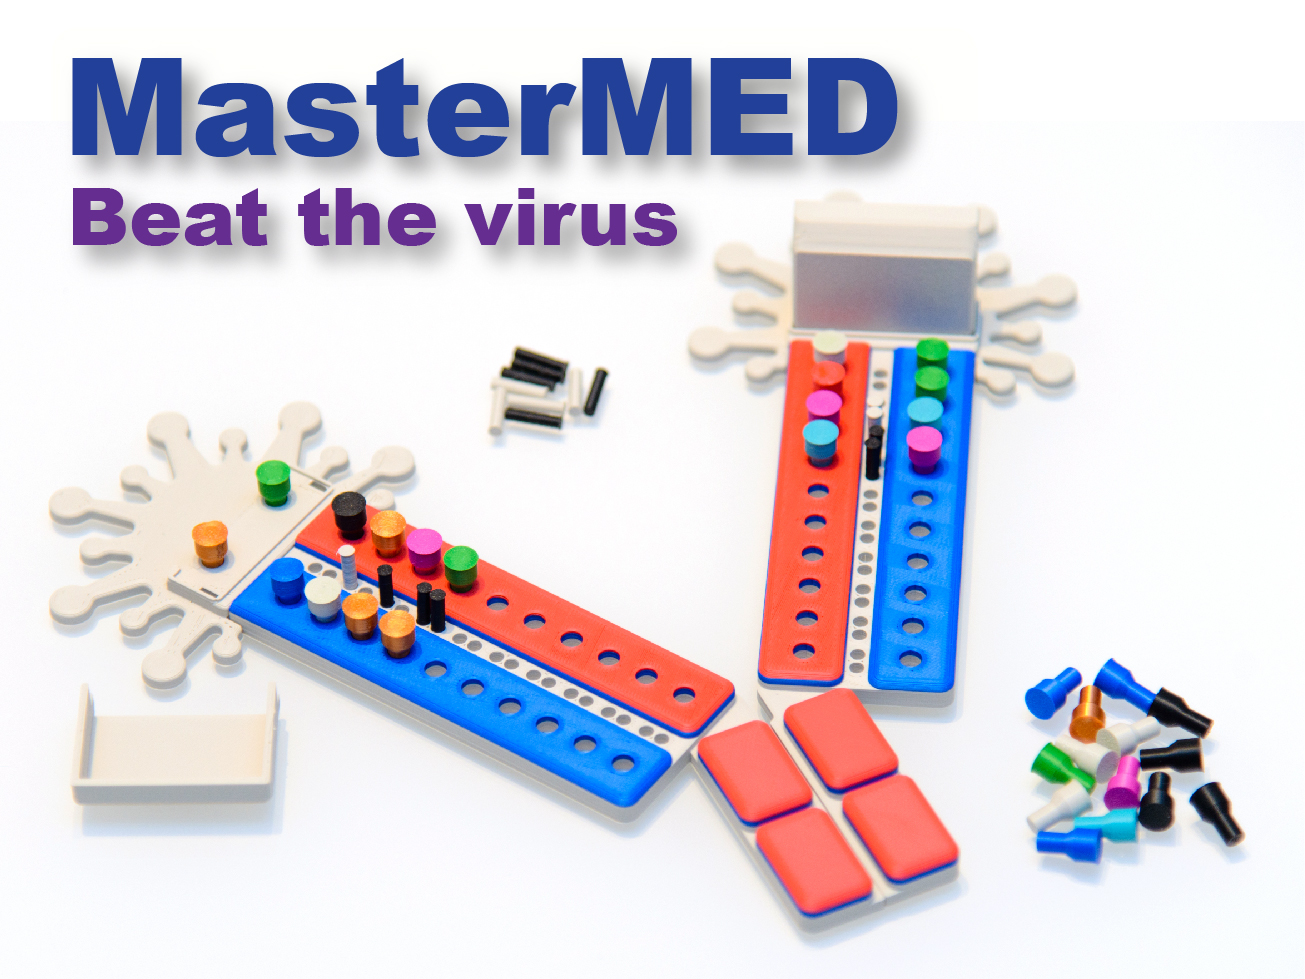 MasterMED - Beat the virus!